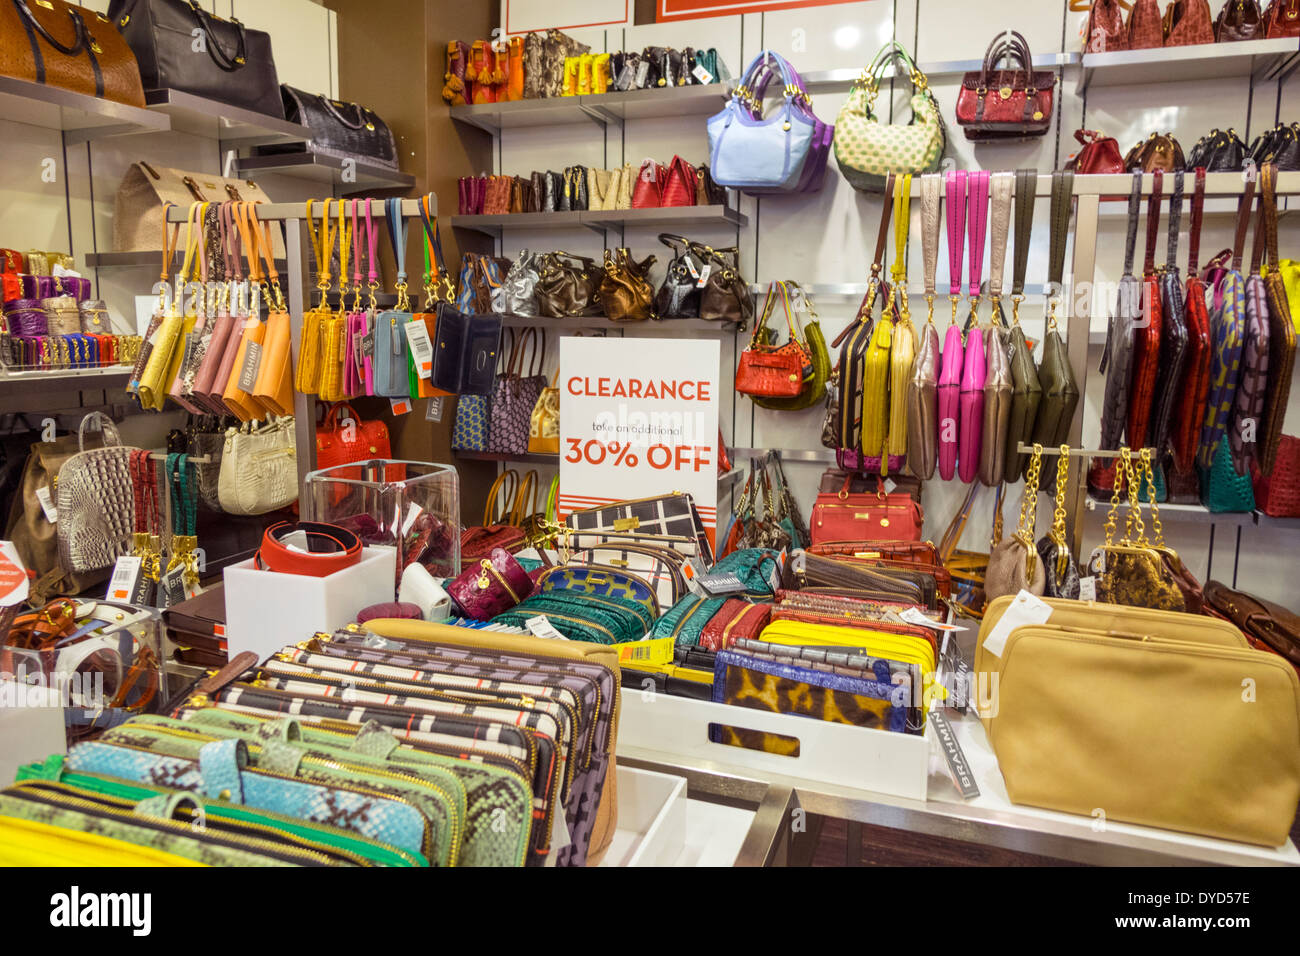 Brahmin Factory Outlet Store - Brahmin Bags,Handbags Outlet Sale